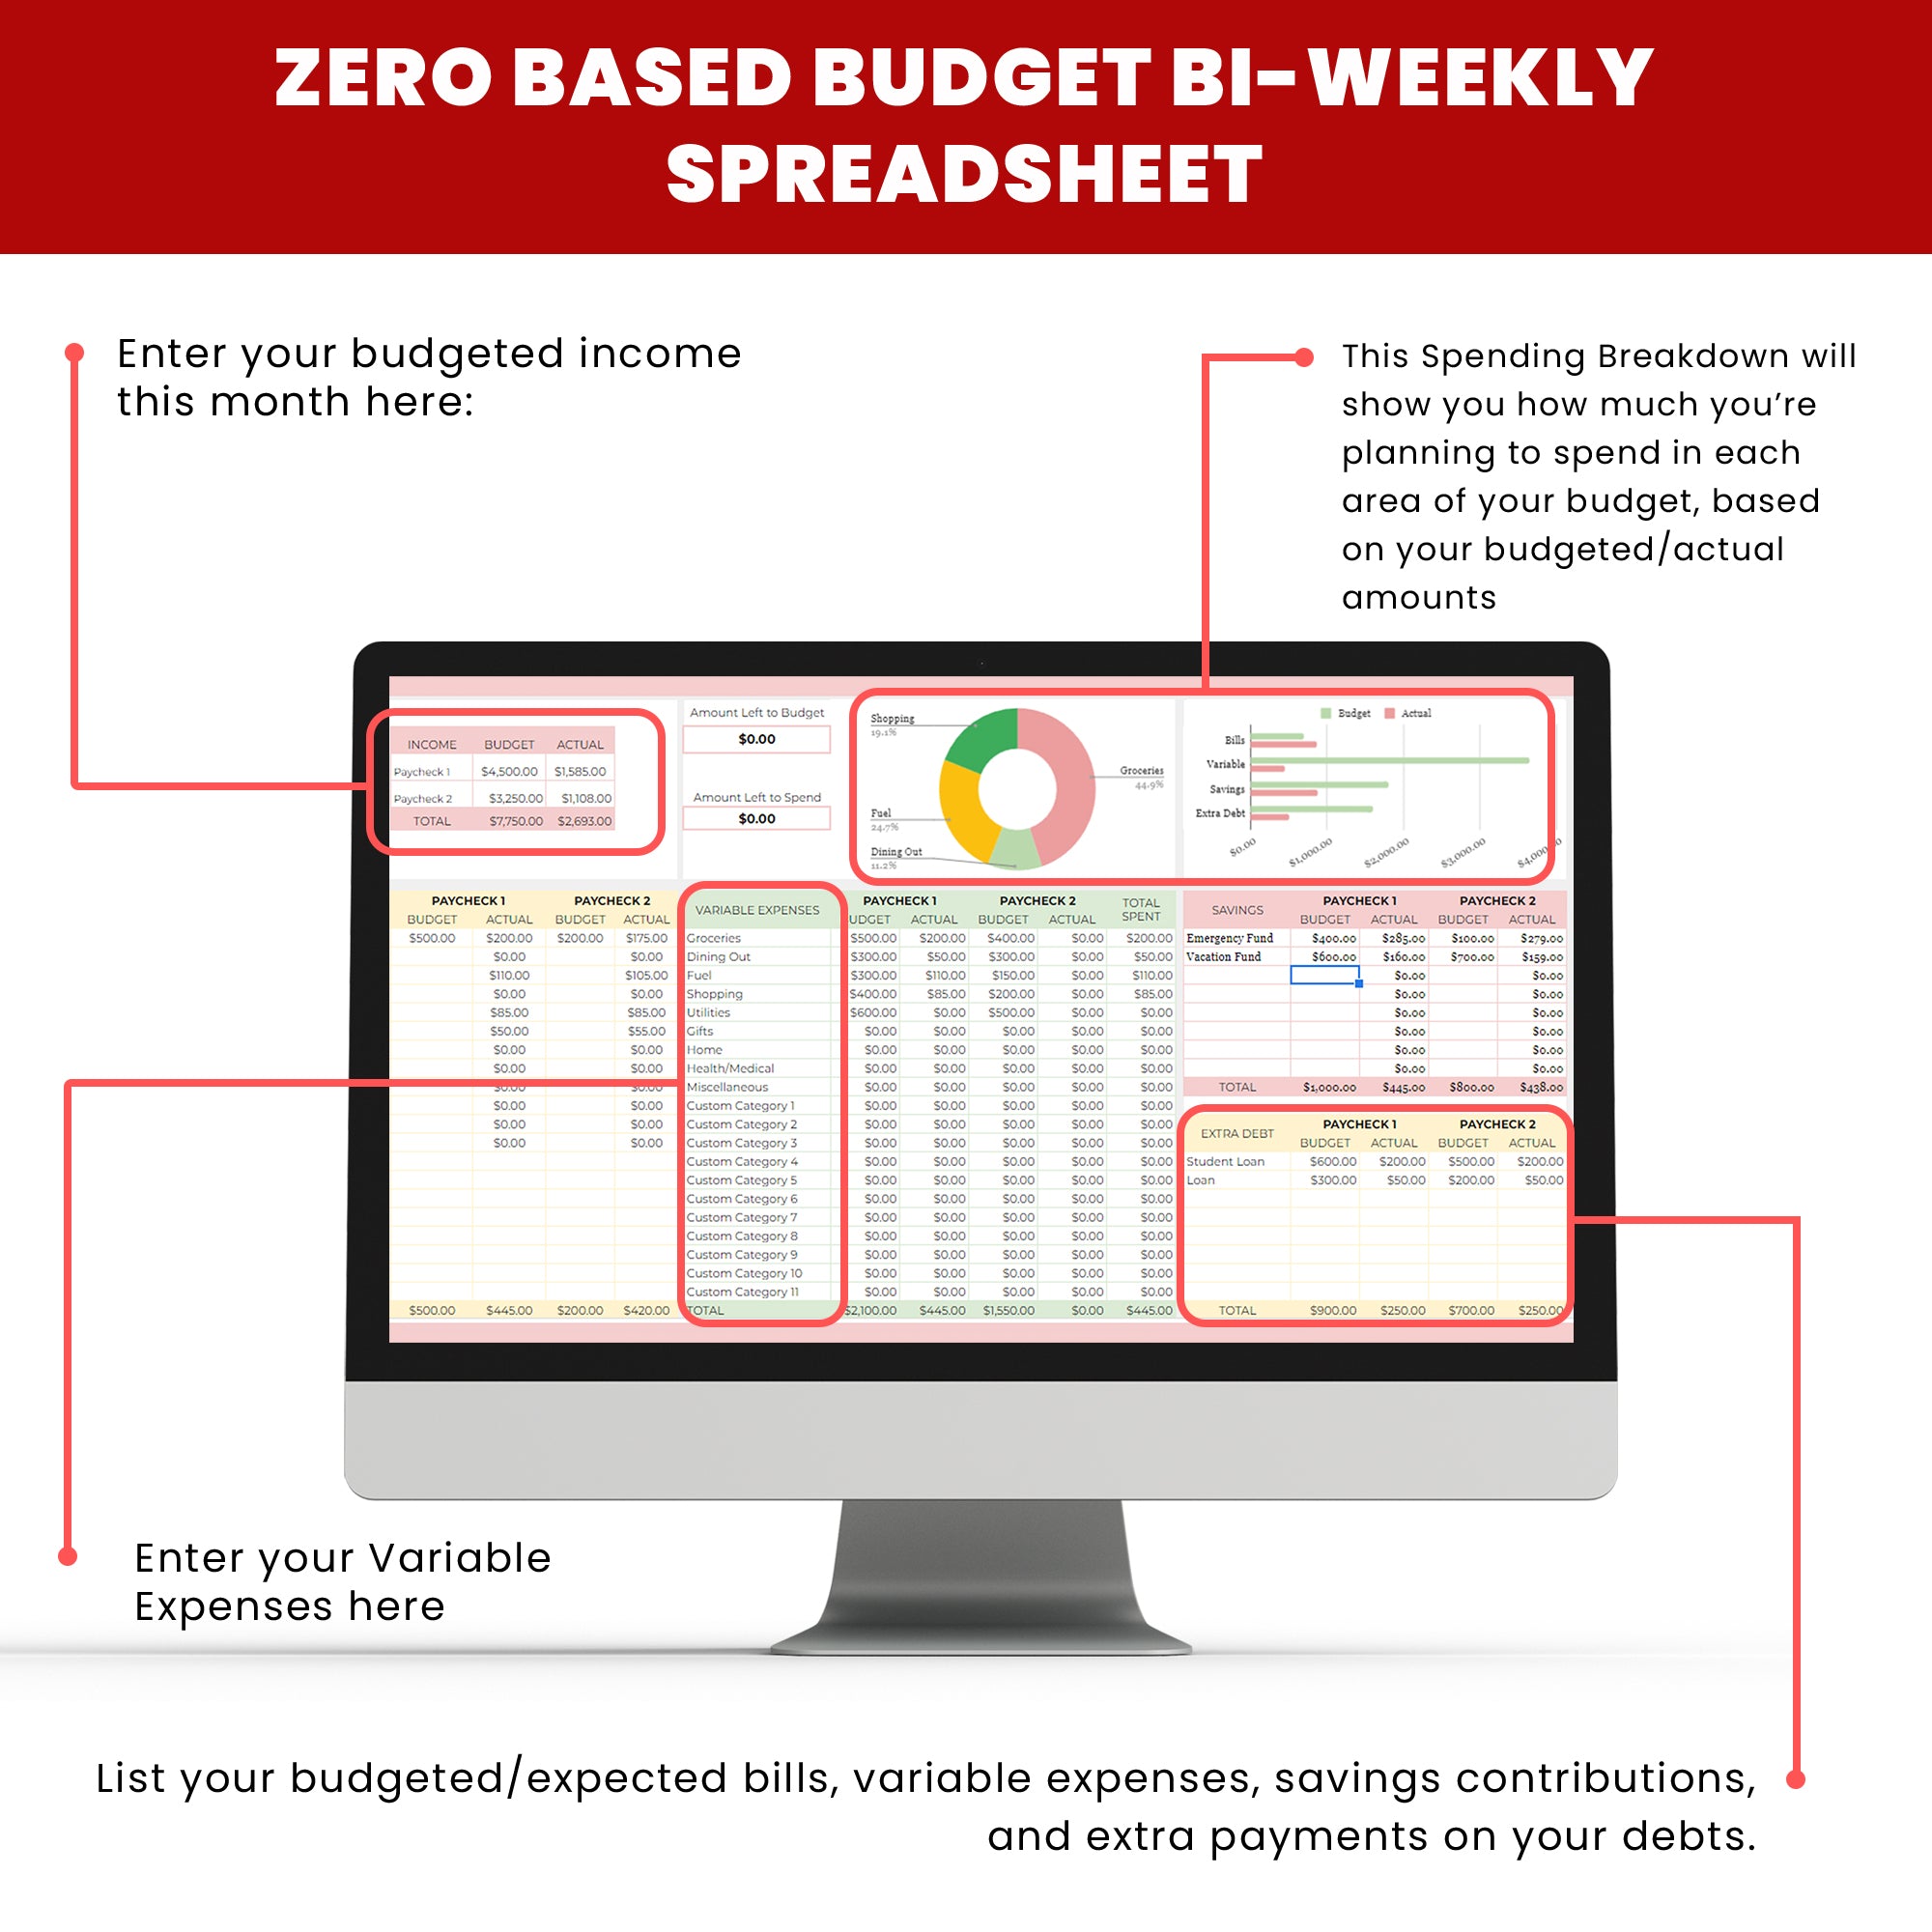 BiWeekBalance: Zero-Based Budget Bi-Weekly